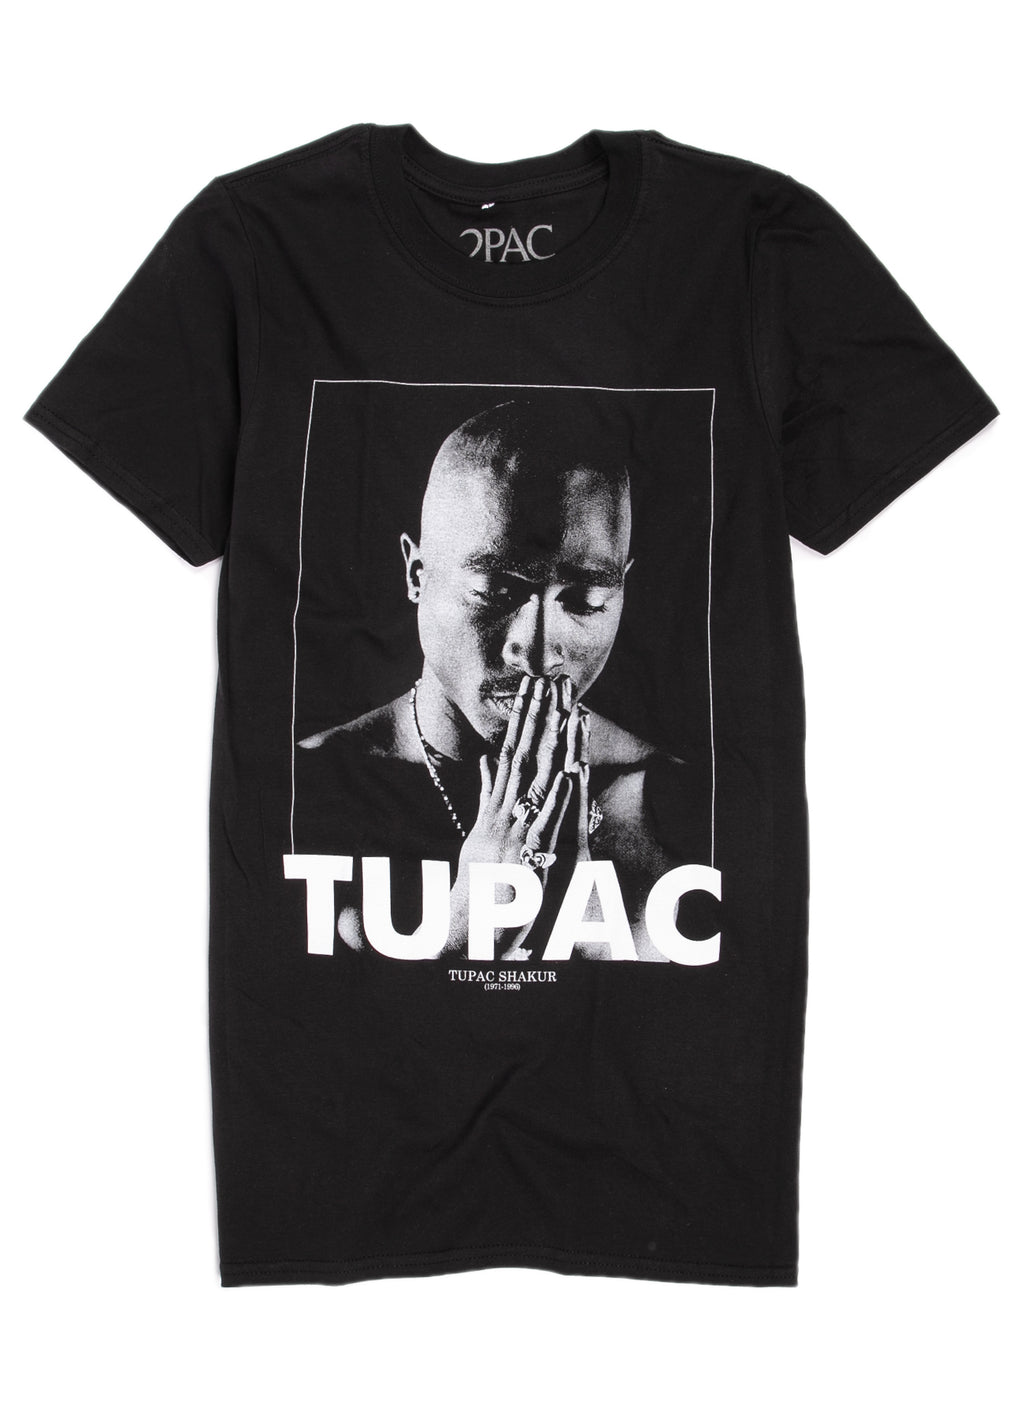 Tupac praying hands t-shirt.